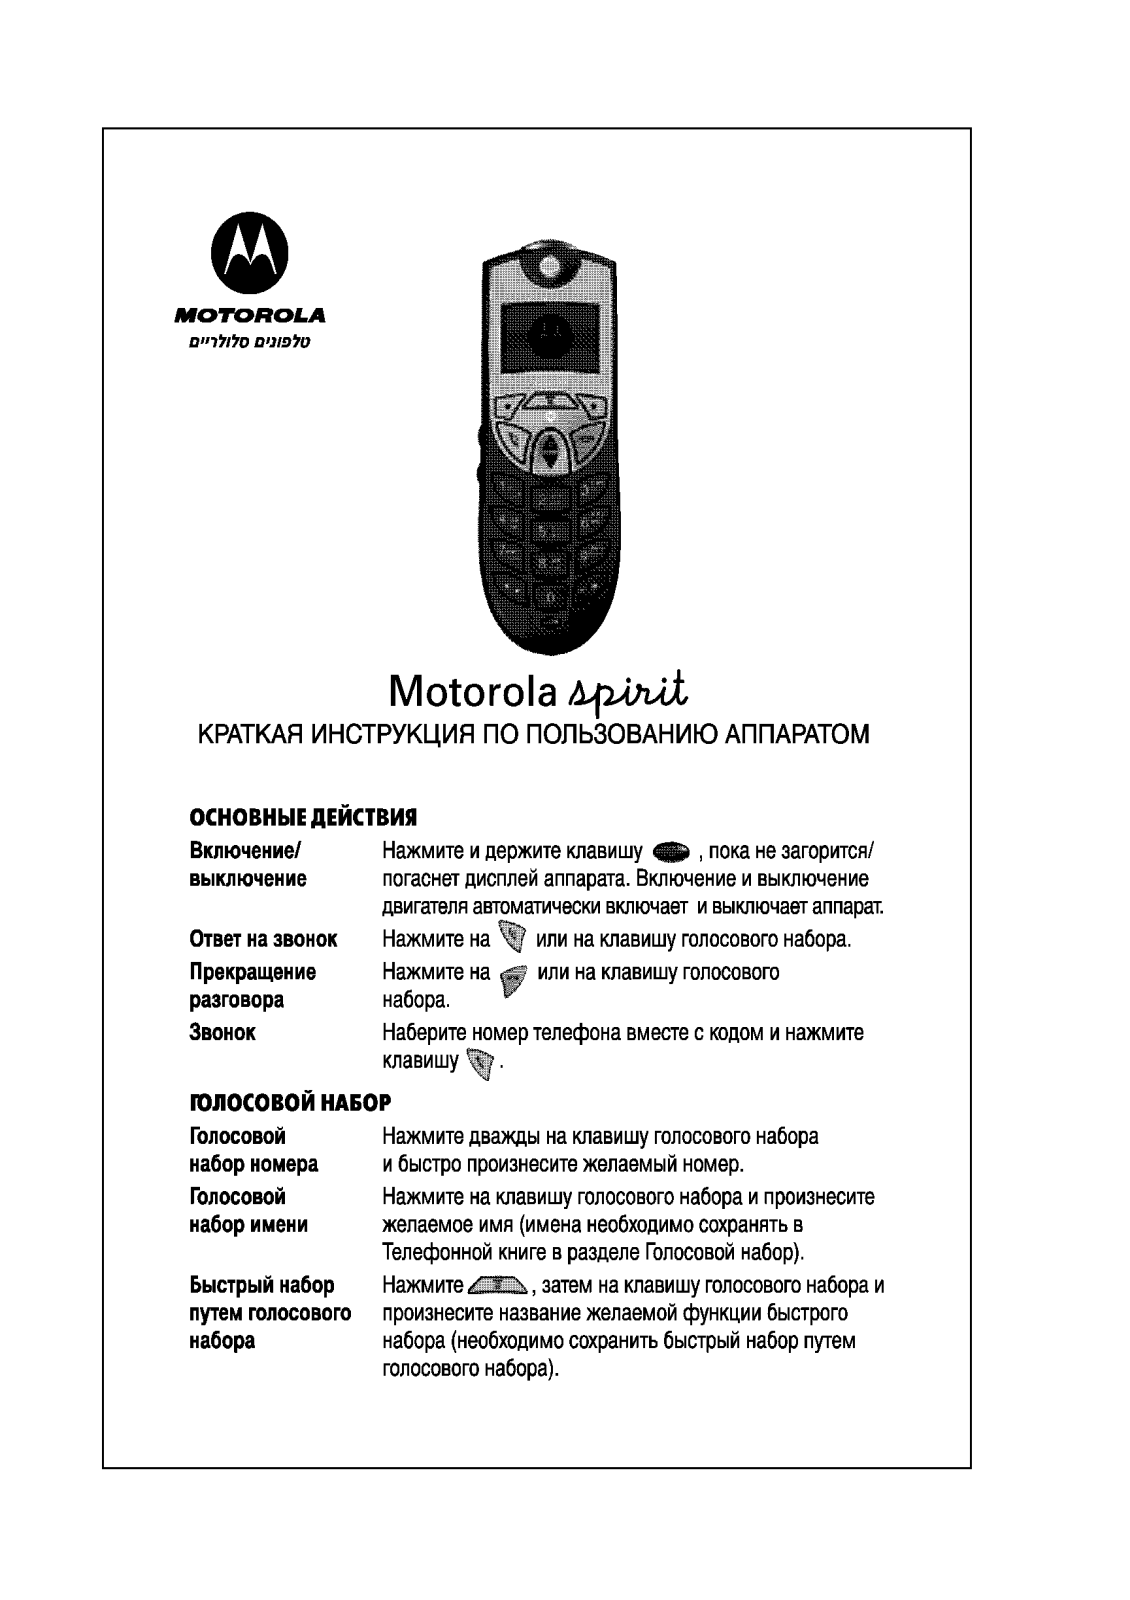 MOTOROLA spirit User Manual